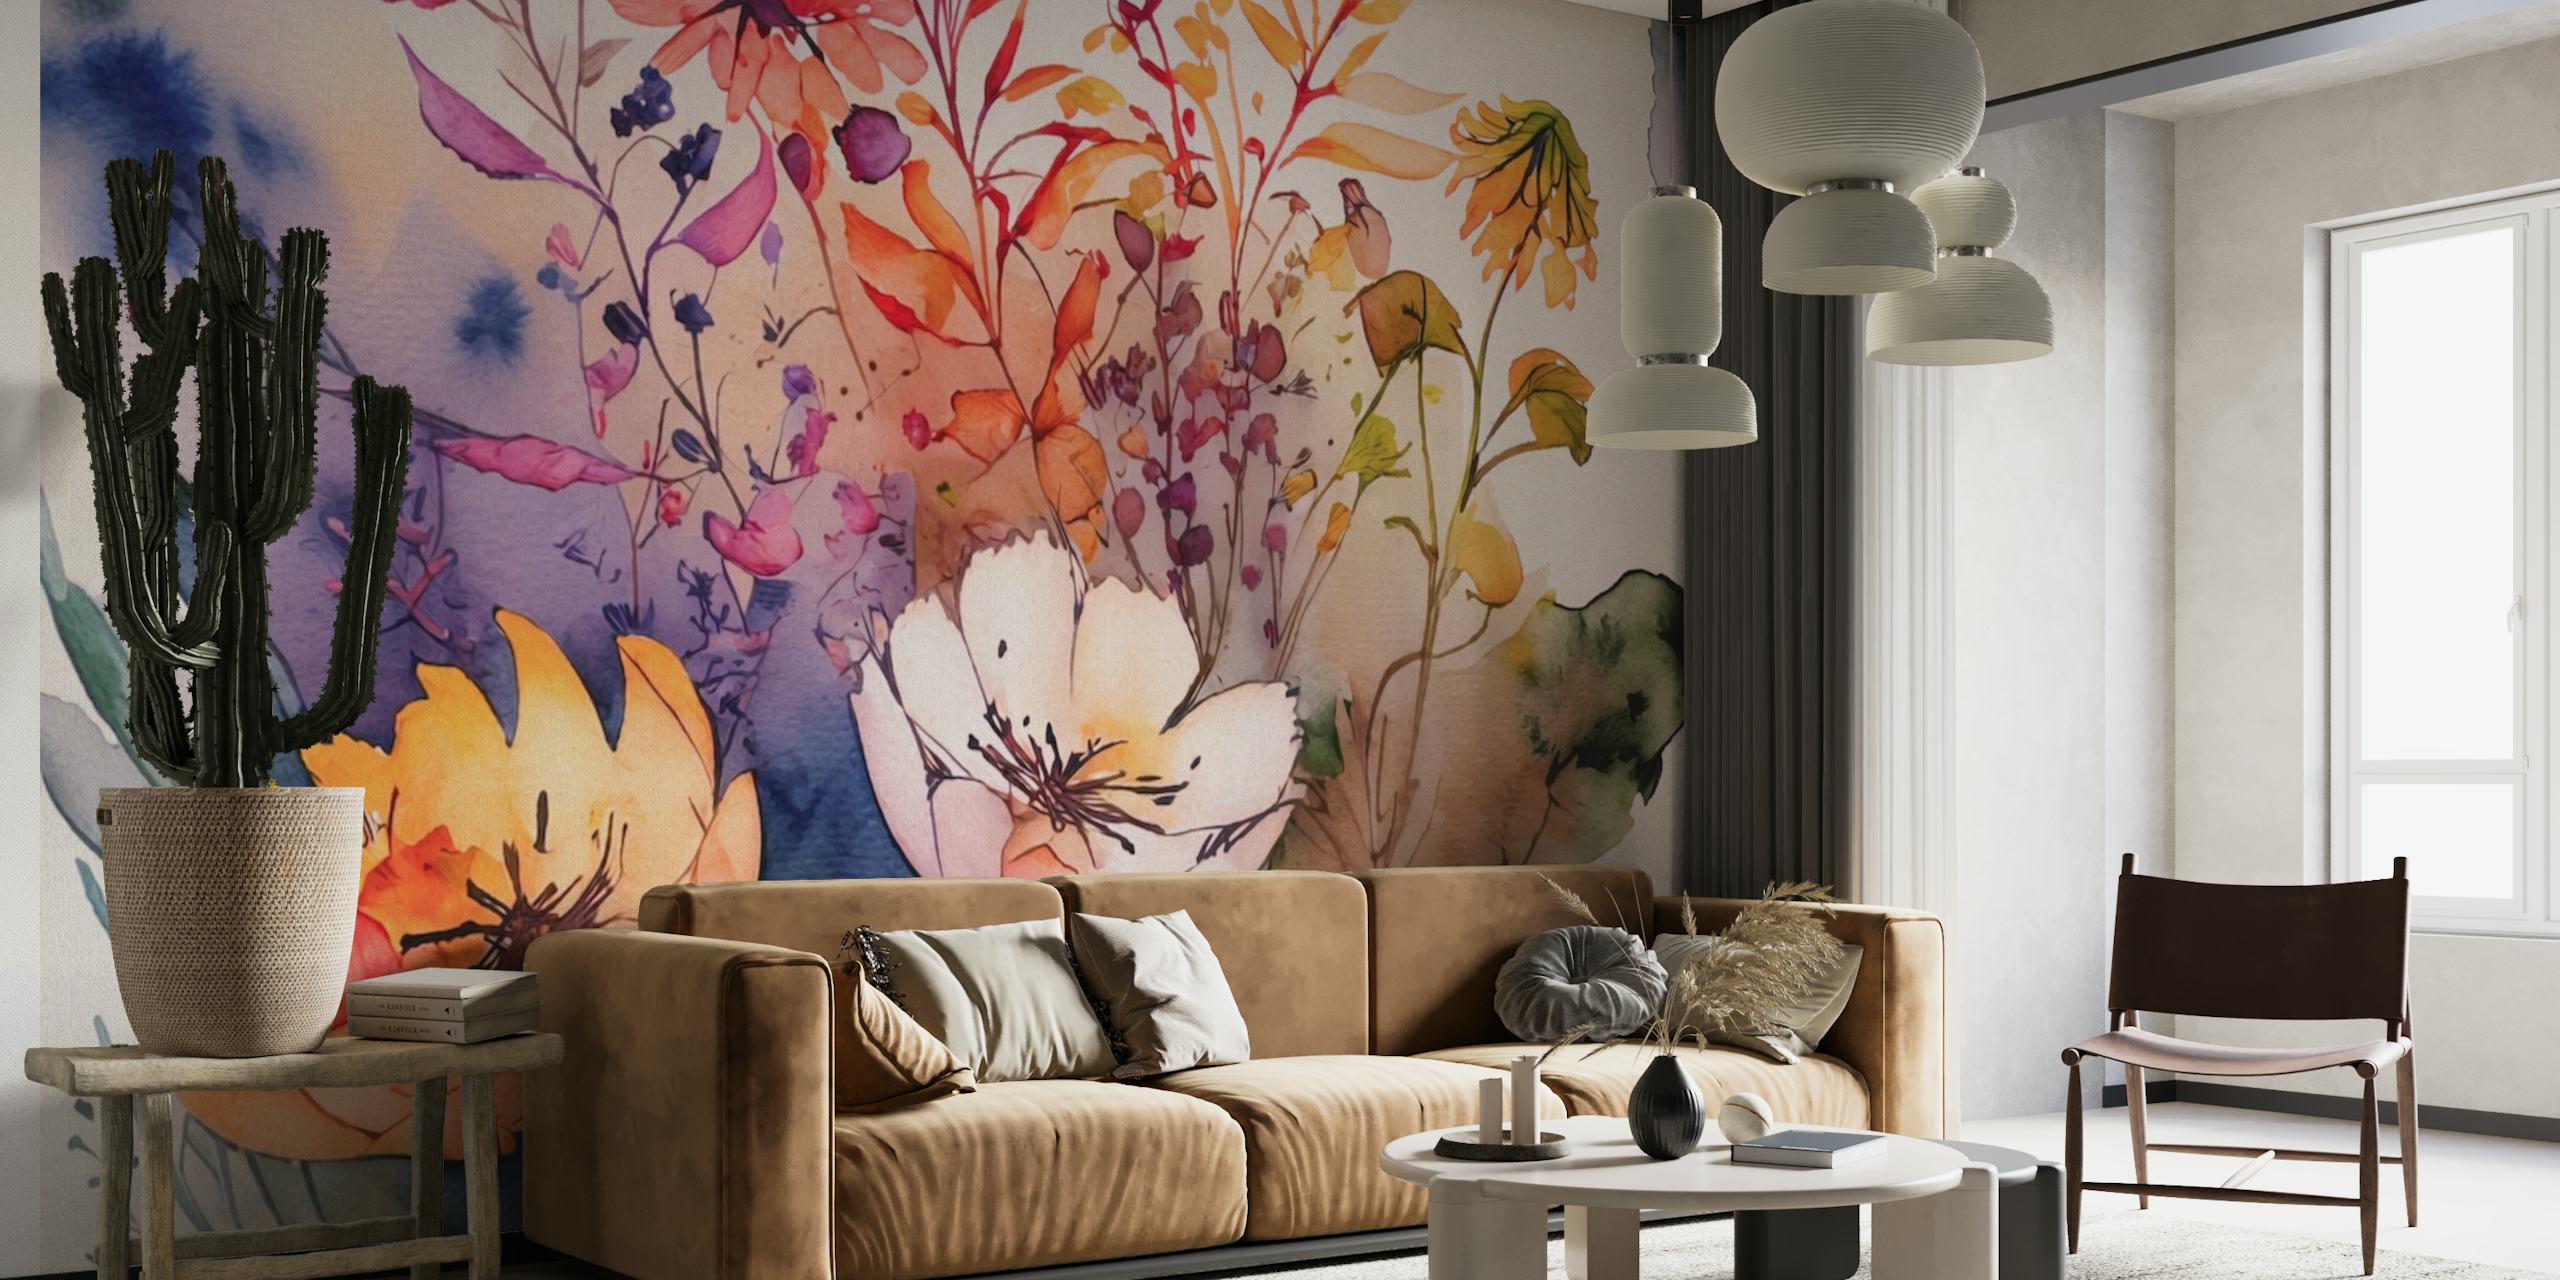 Elegante murale di arte astratta floreale ad acquerello con tenui toni pastello e fioriture artistiche